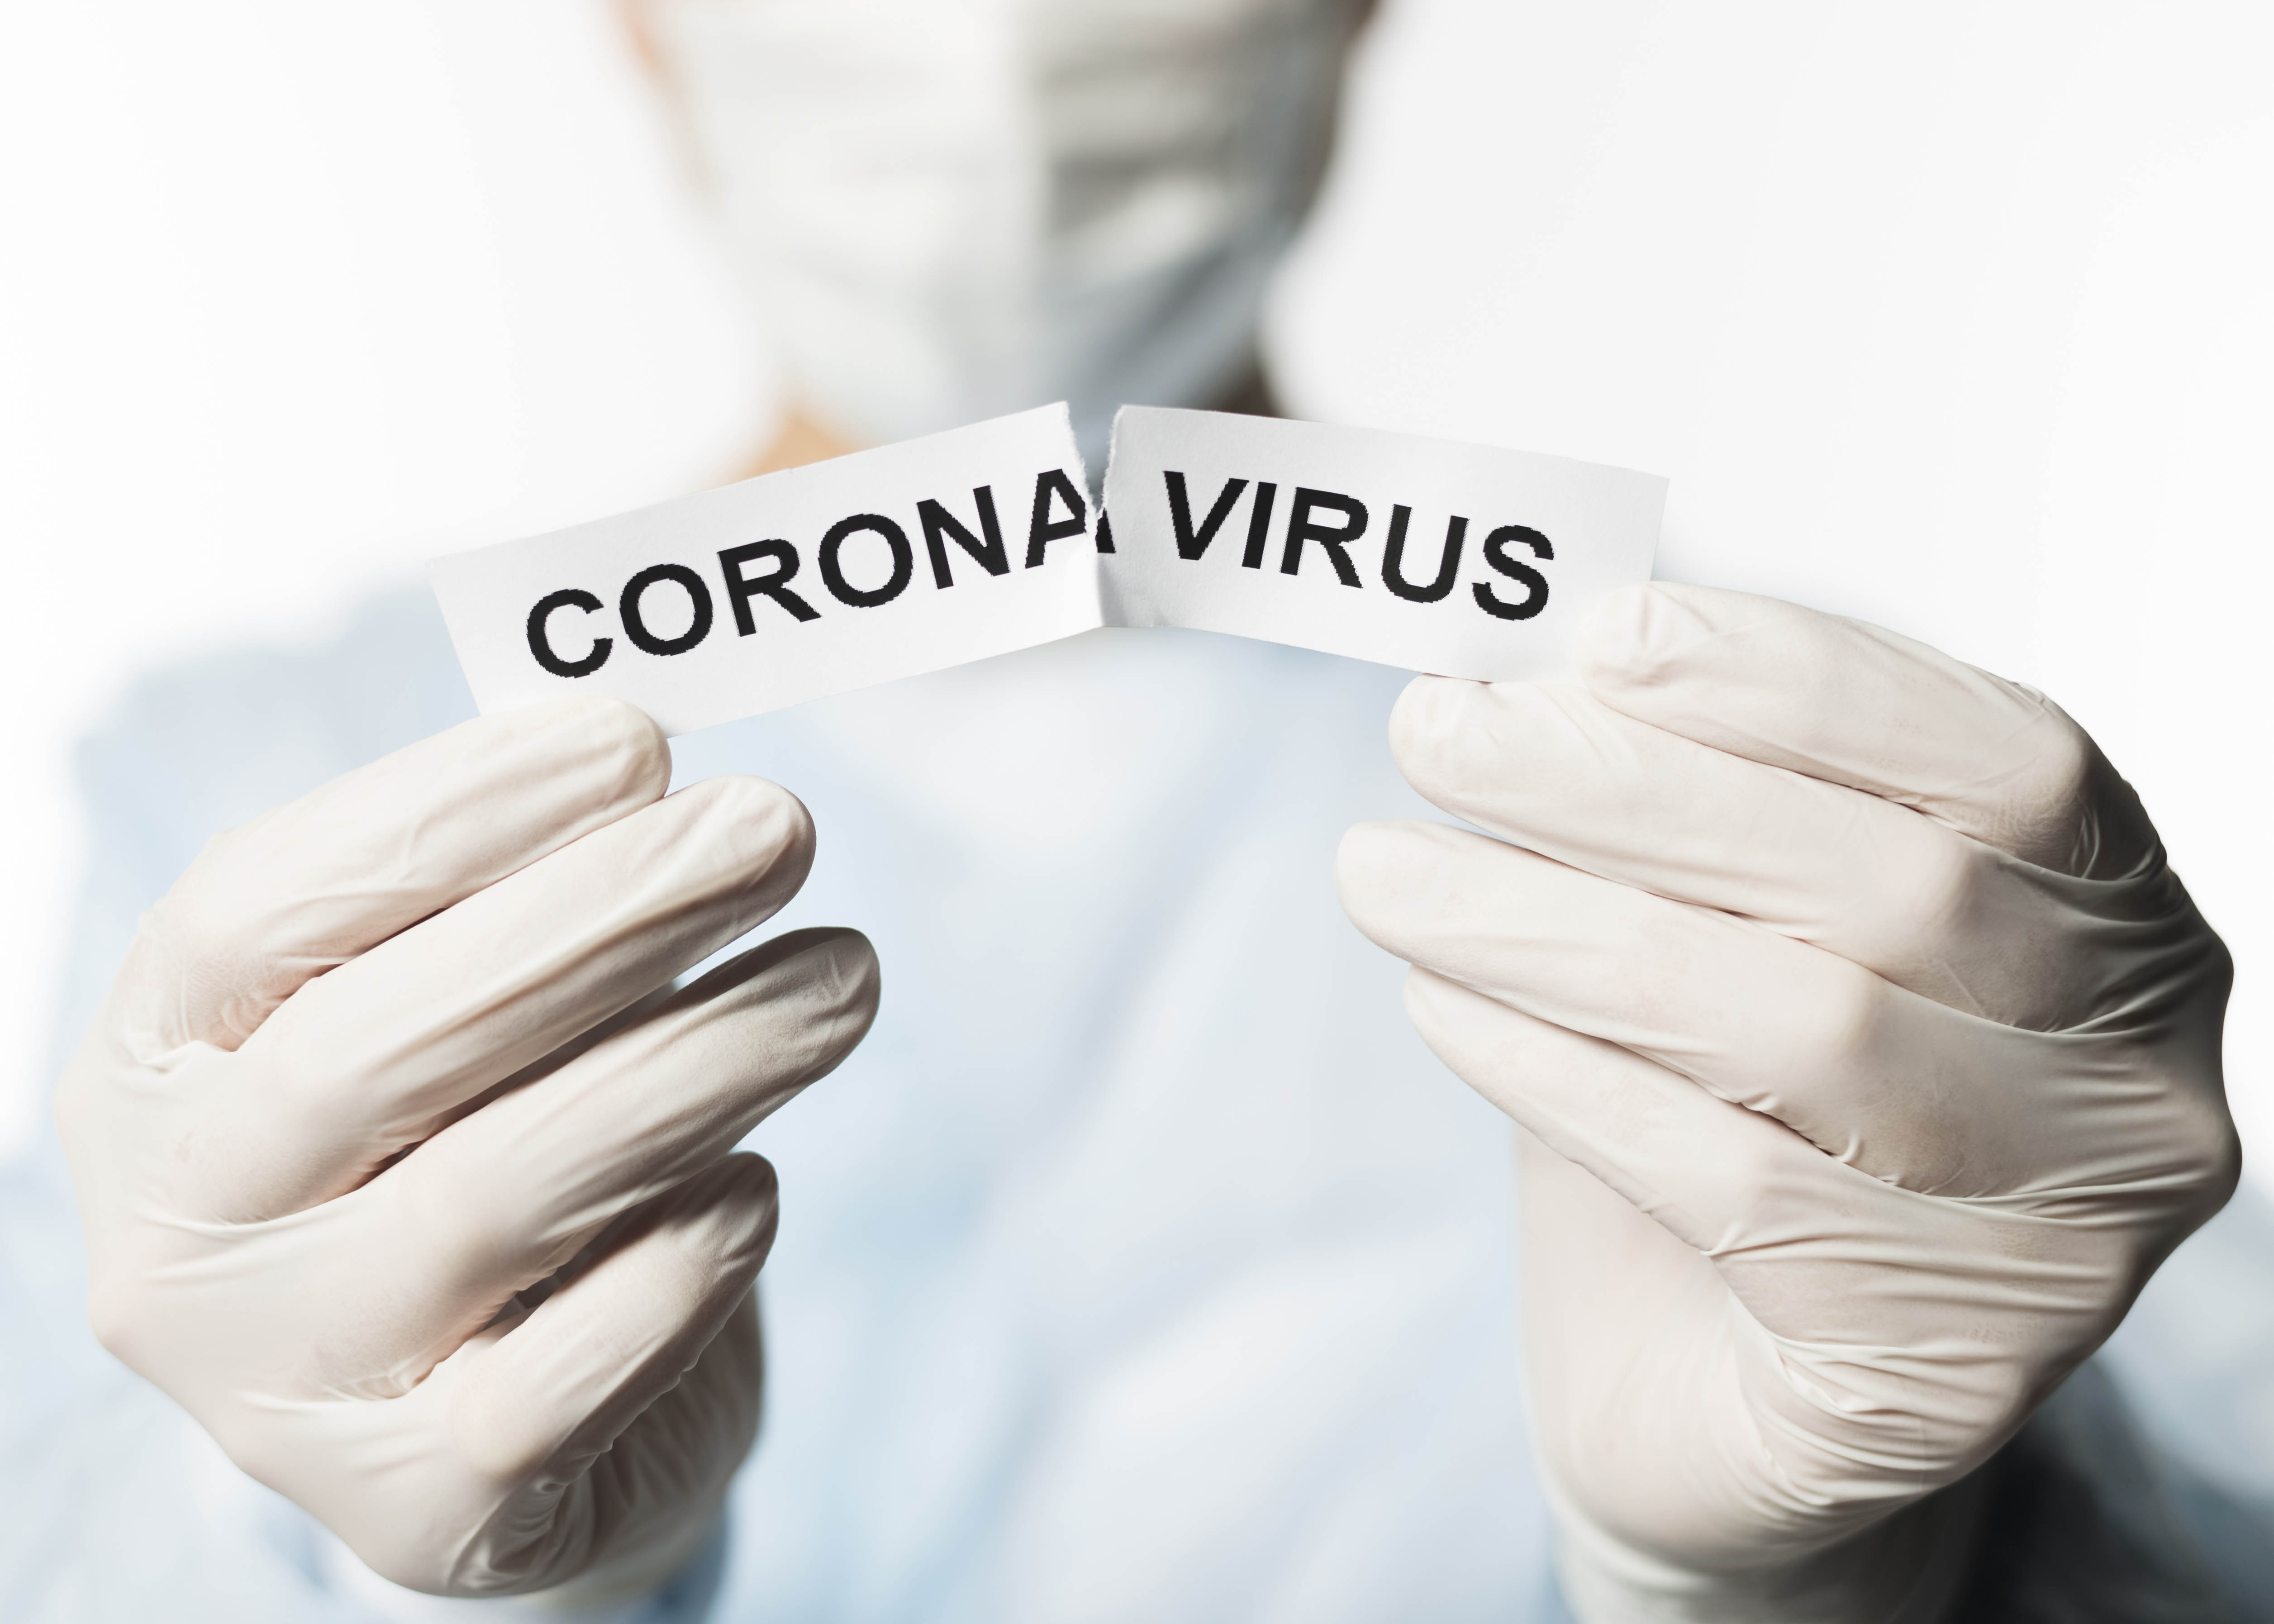 Koronavirüs Dünya Sağlık Örgütü Tarafından Pandemi İlan Edildi. Peki bu ne demek?